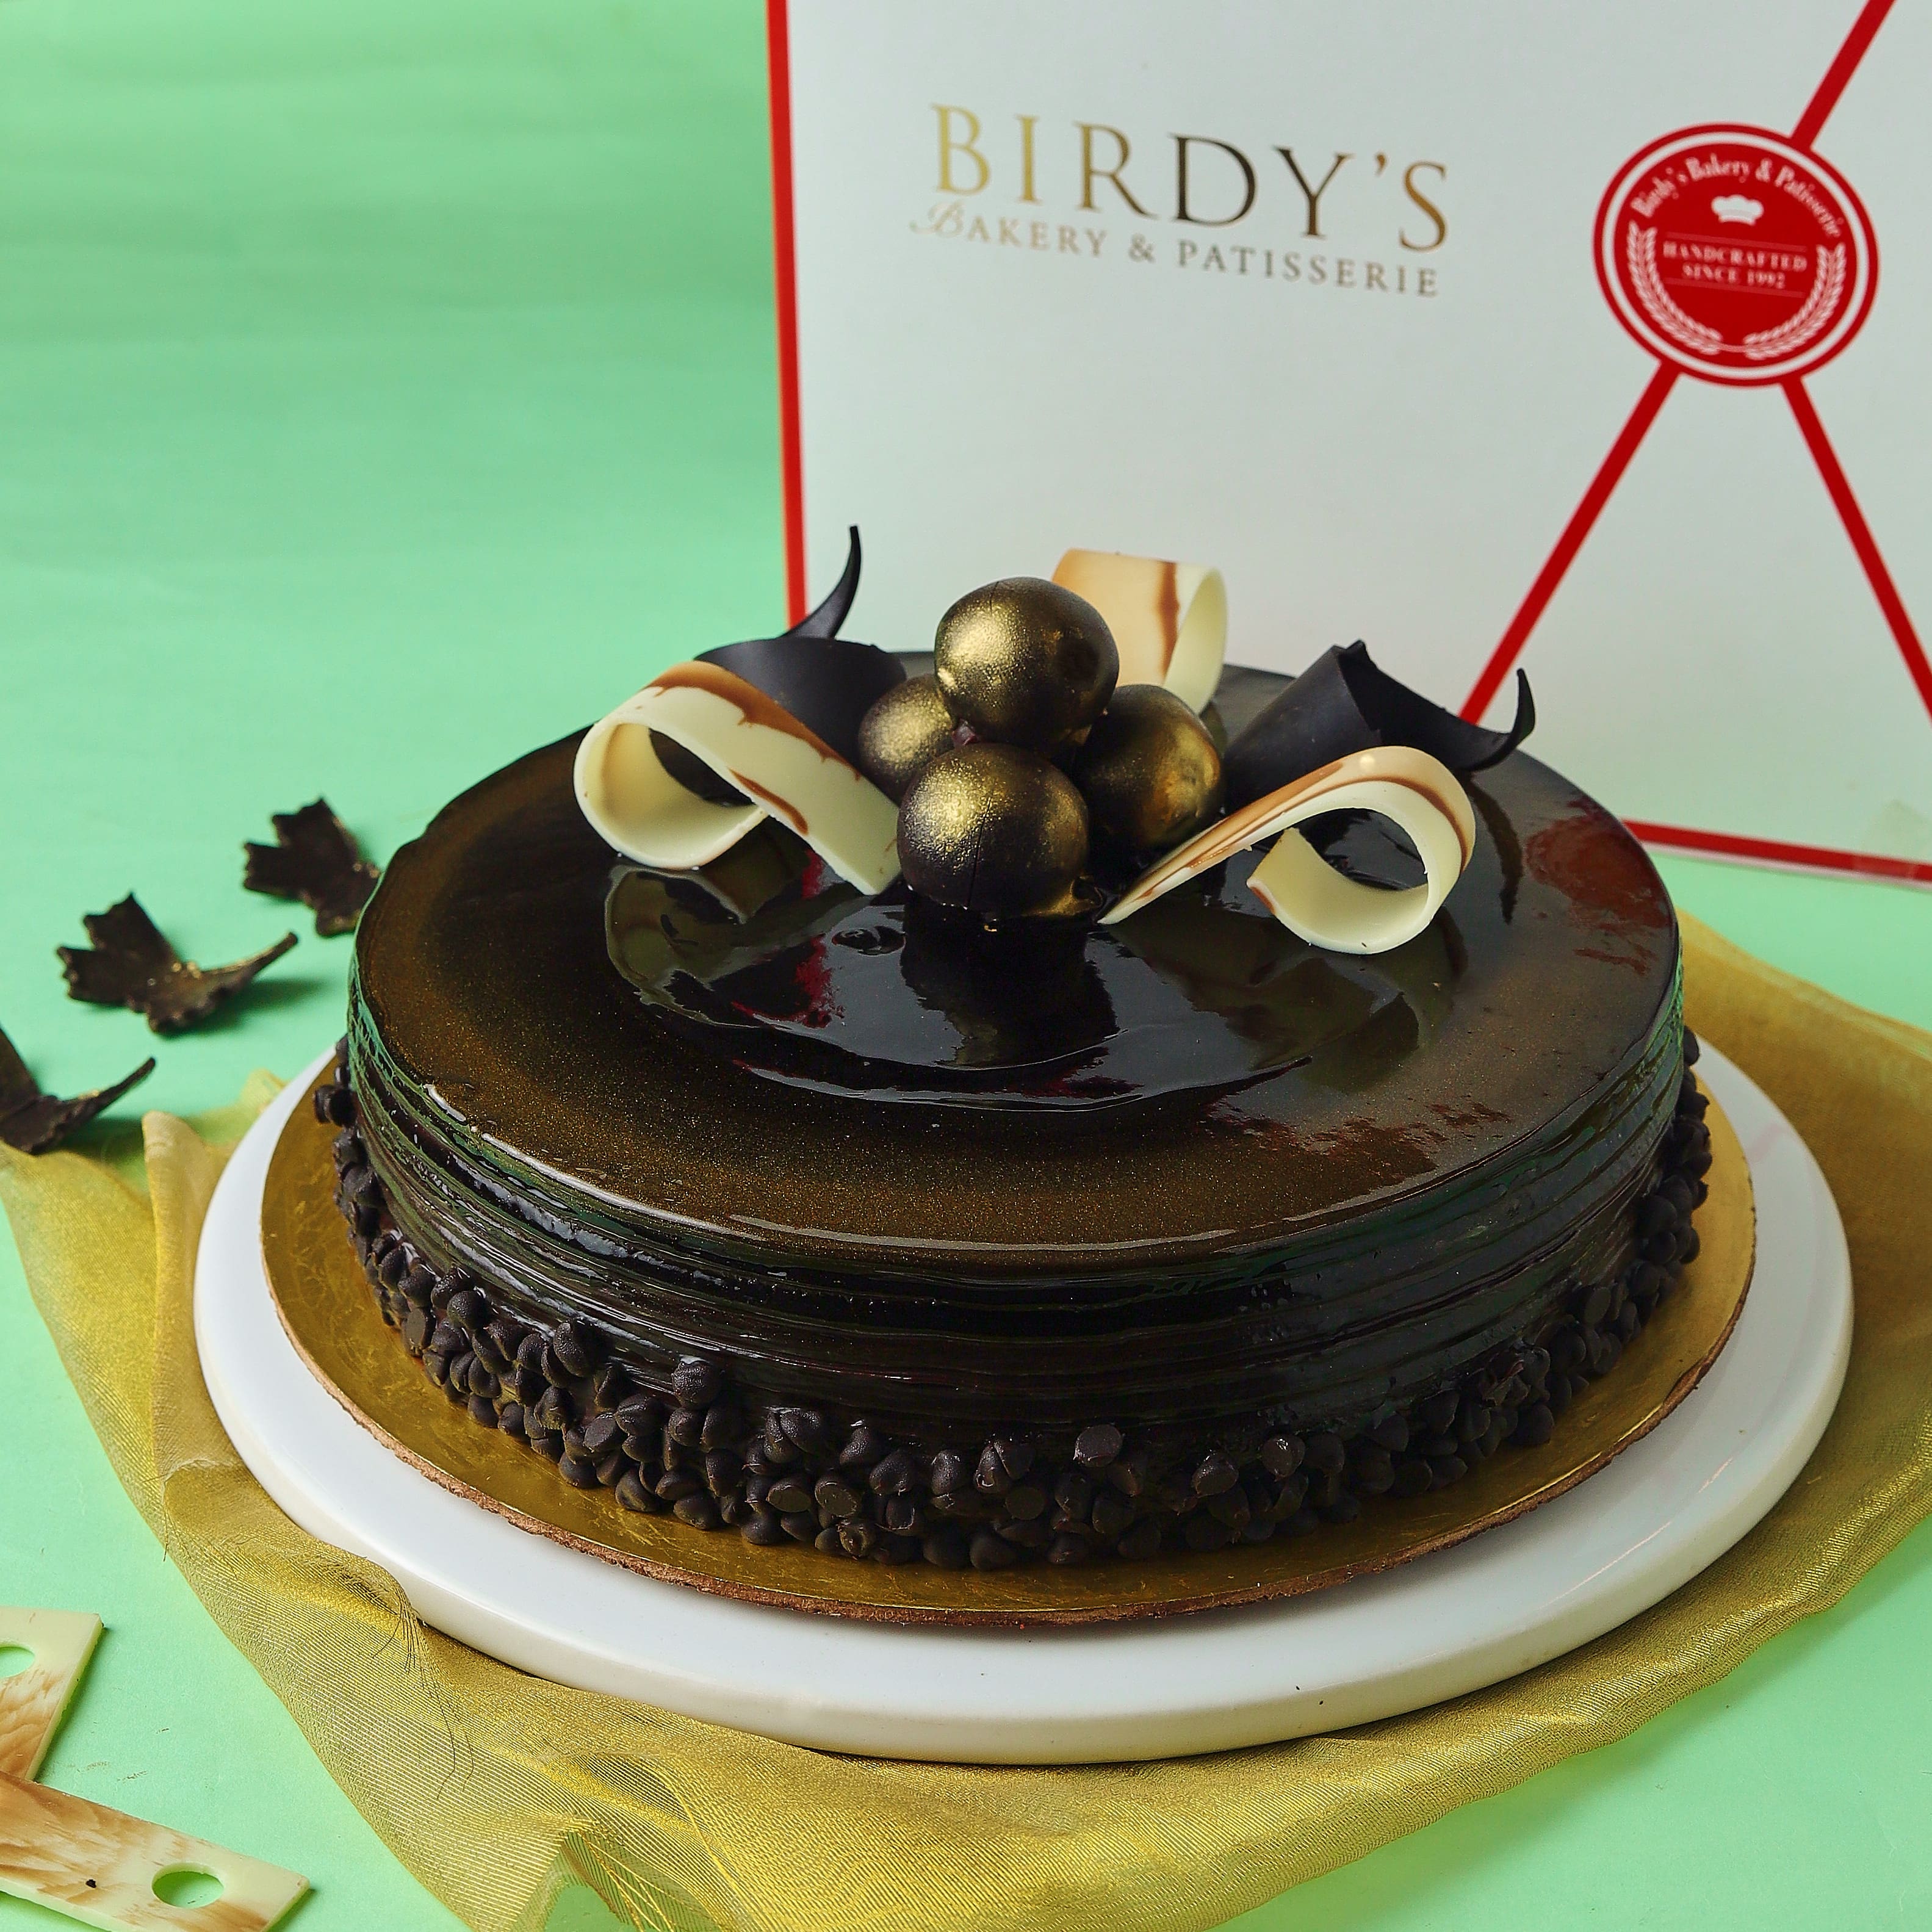 Menu of Birdy's Bakery & Patisserie, Prabhadevi, Mumbai | Dineout